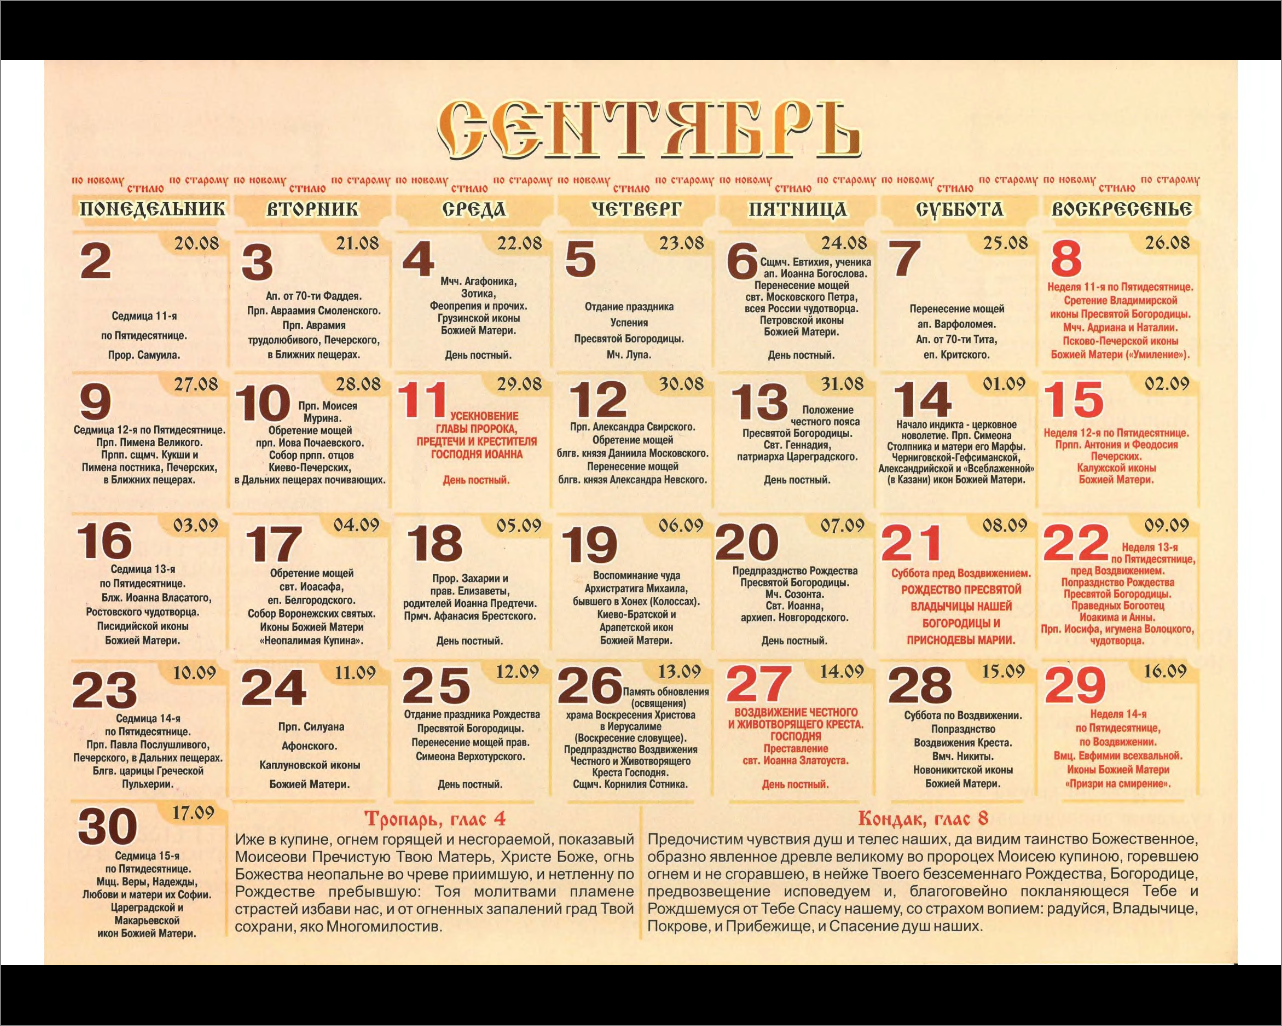 Православные даты святых. Имена по православному календарю. Православный календарь имен. Православный календарь святых по именам.